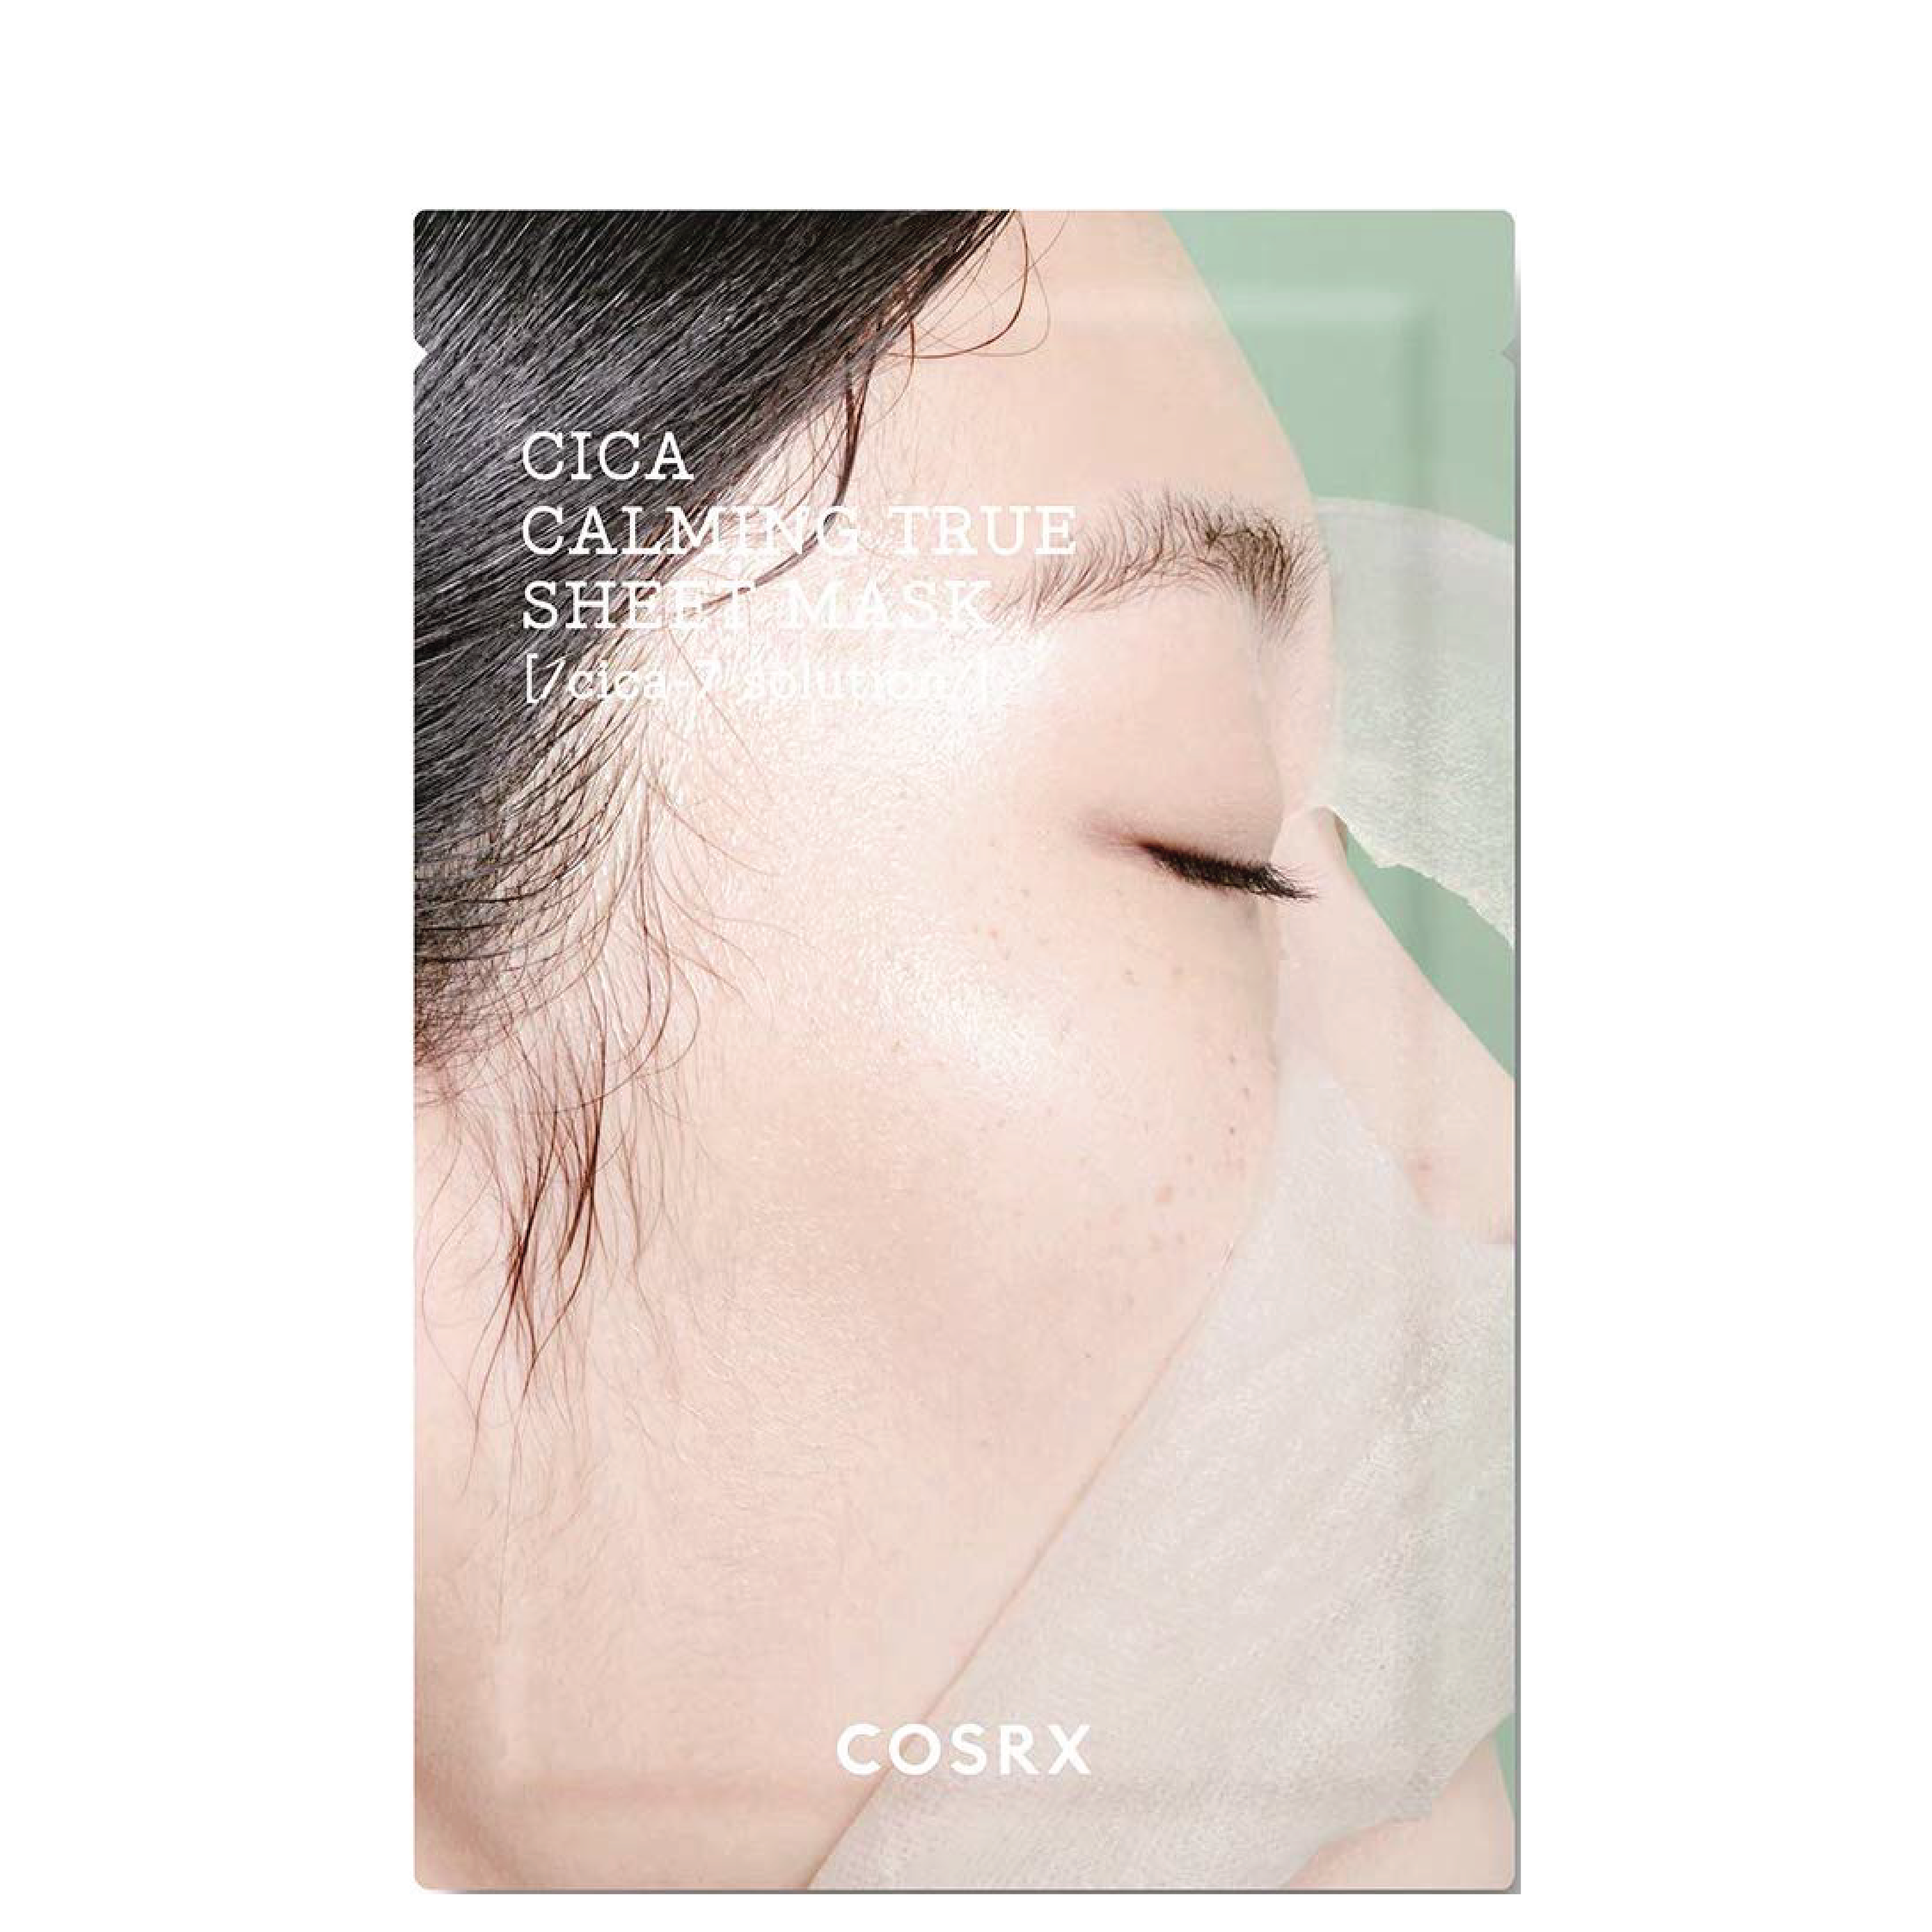 Cosrx Pure Fit Cica Calming True Sheet Mask